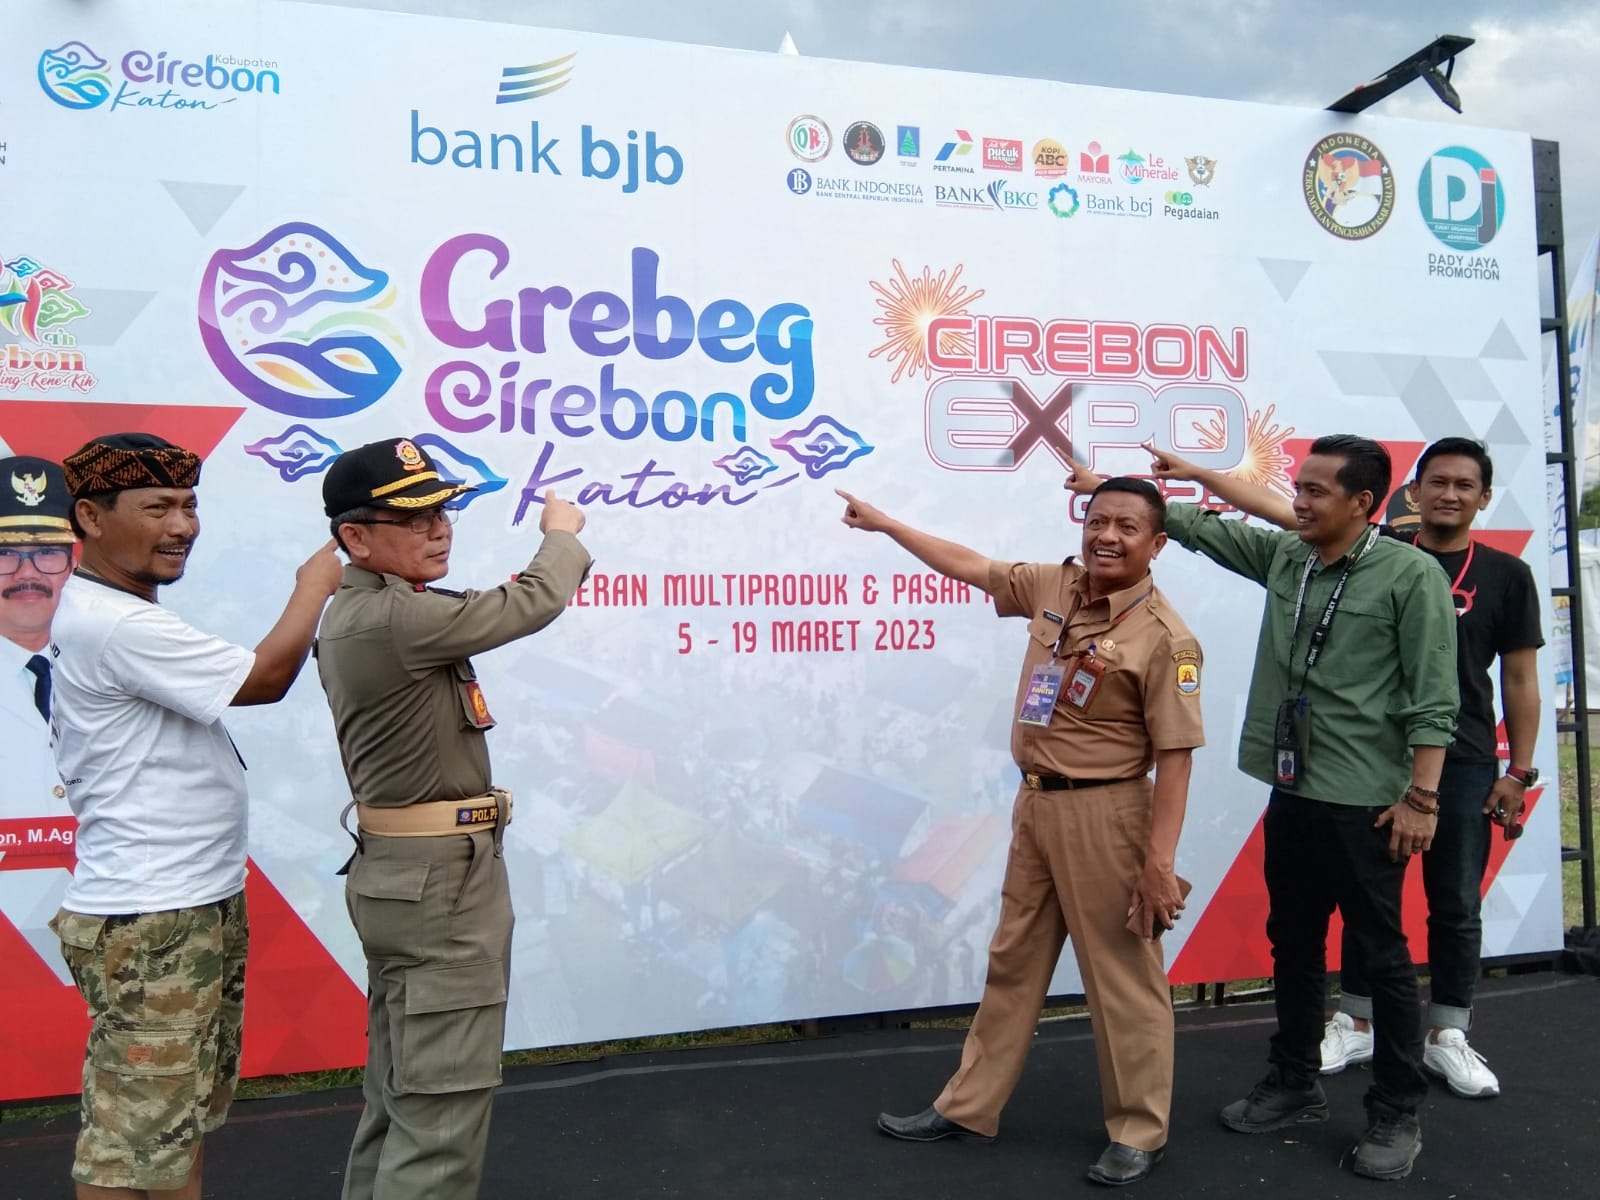 Tarling Klasik Hingga Brai Bakal Ditampilkan dalam Grebeg Cirebon Katon, Pestanya Rakyat Kabupaten Cirebon